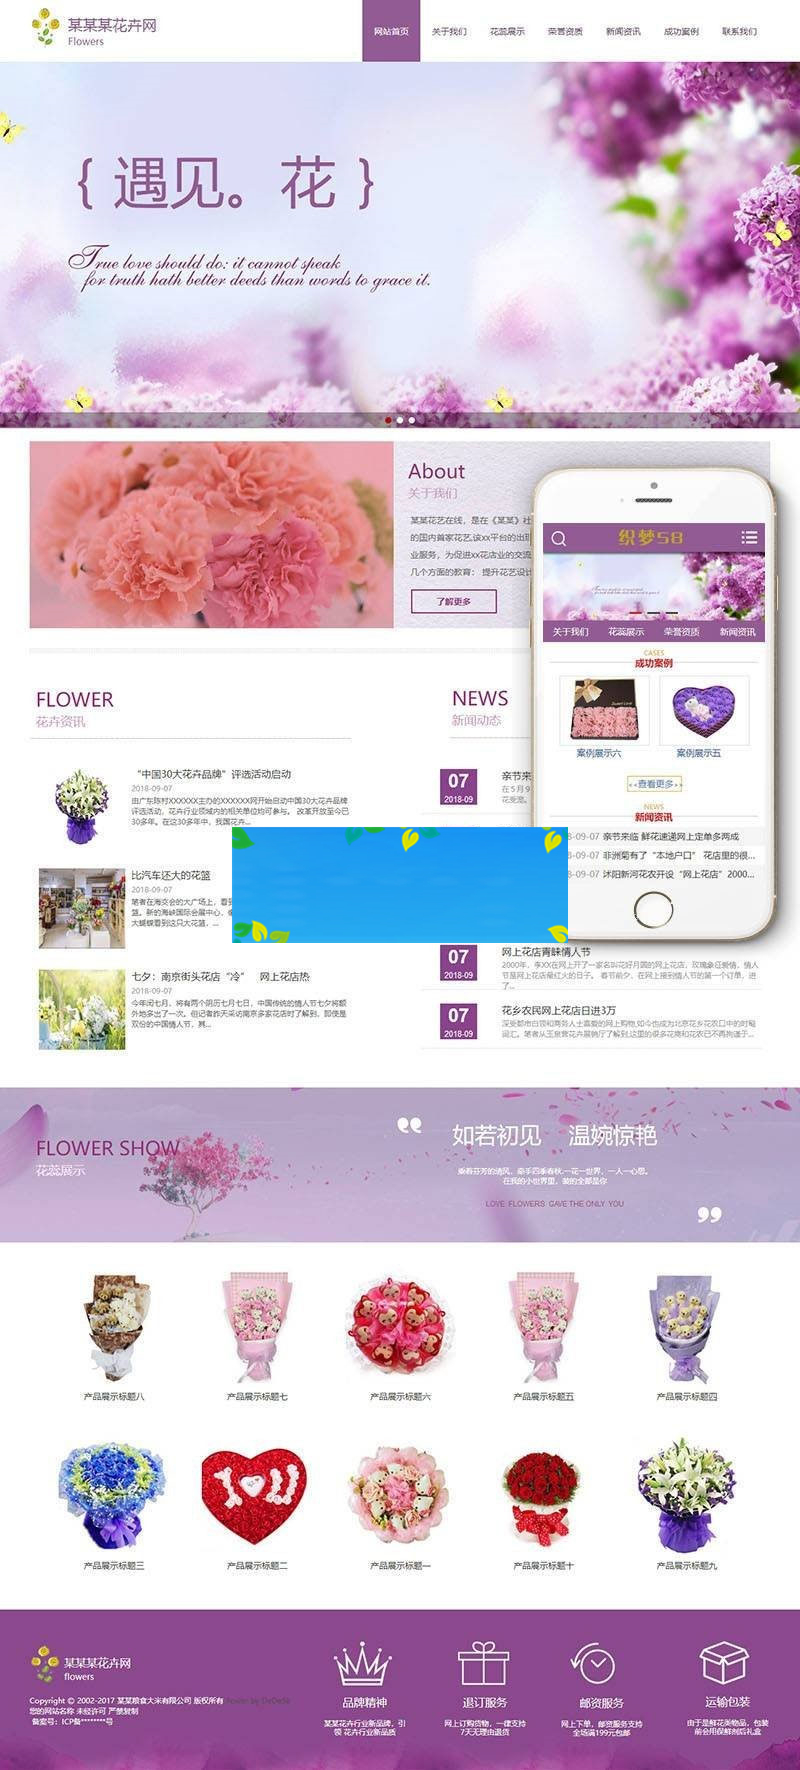 织梦dedecms响应式节日礼品鲜花企业网站模板(自适应手机移动端)